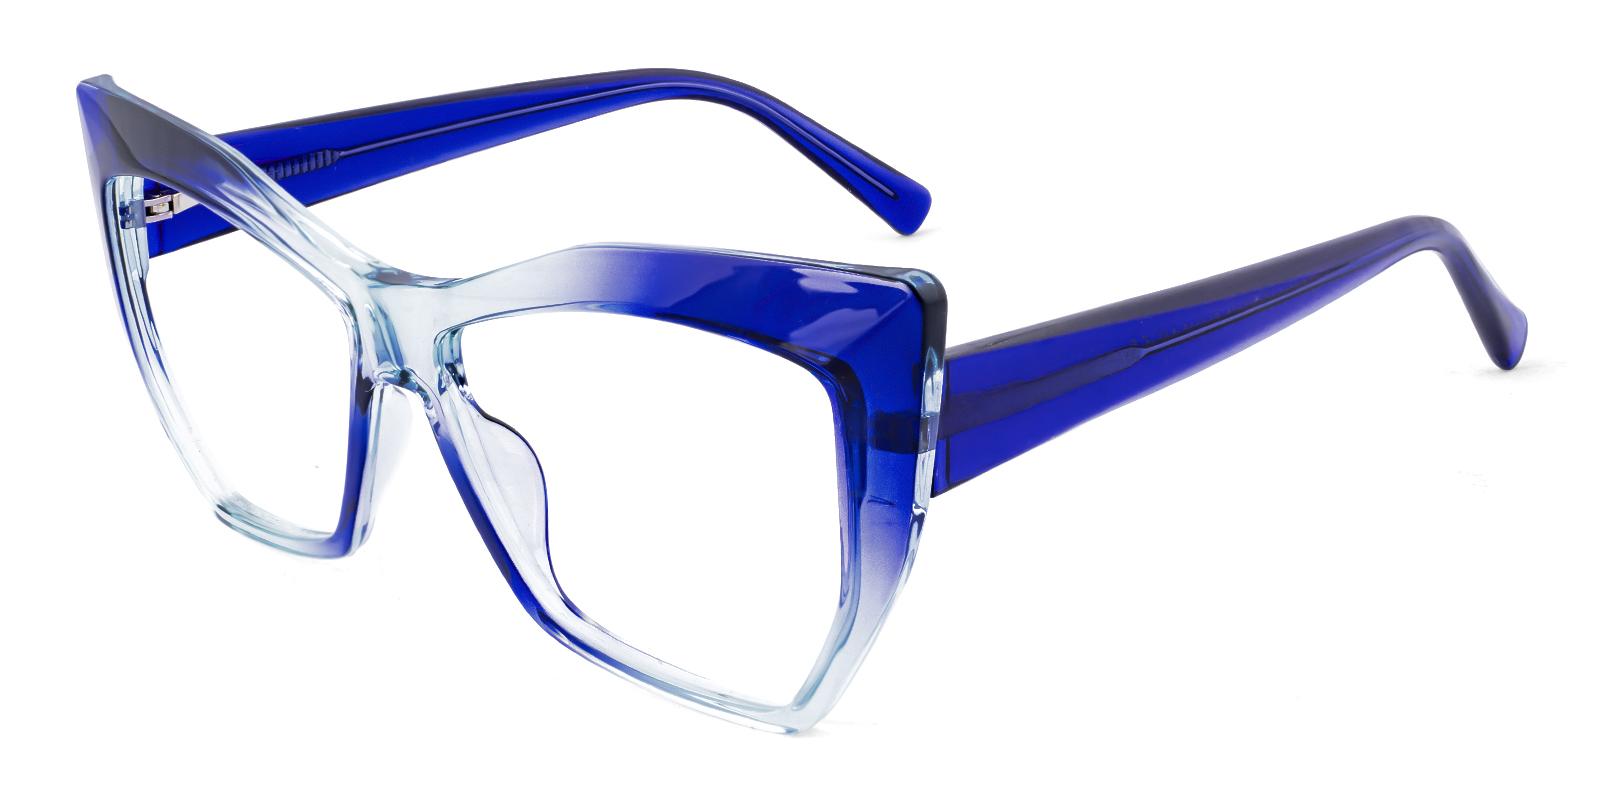 Reft Blue Acetate Eyeglasses , SpringHinges , UniversalBridgeFit Frames from ABBE Glasses